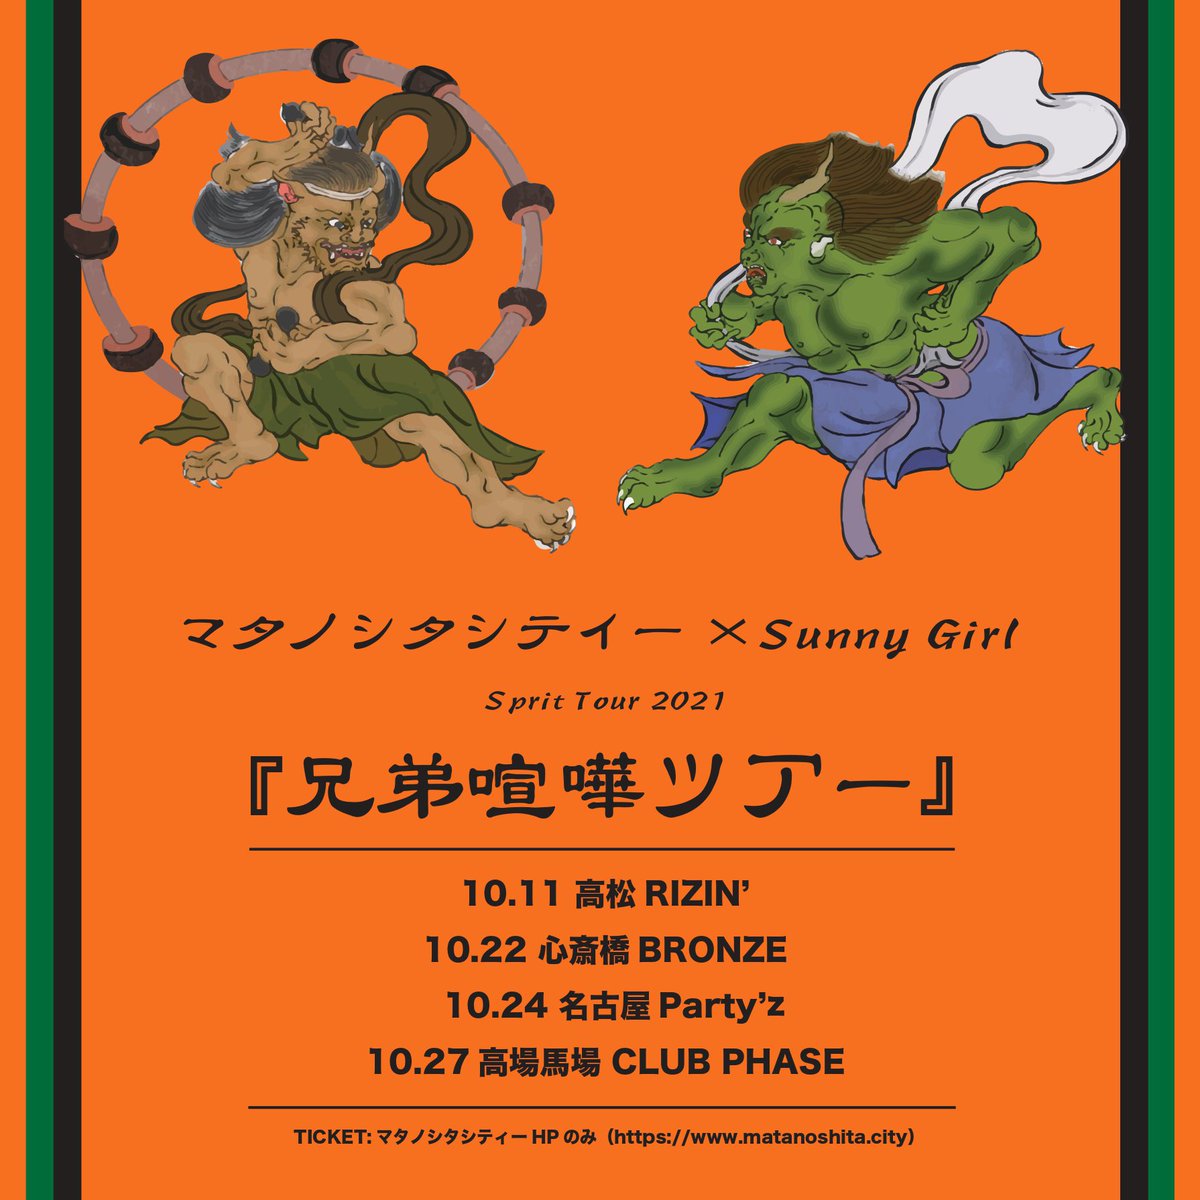 "マタノシタシティー×Sunny Girl" spirit tour 2021 ｢兄弟喧嘩ツアー｣